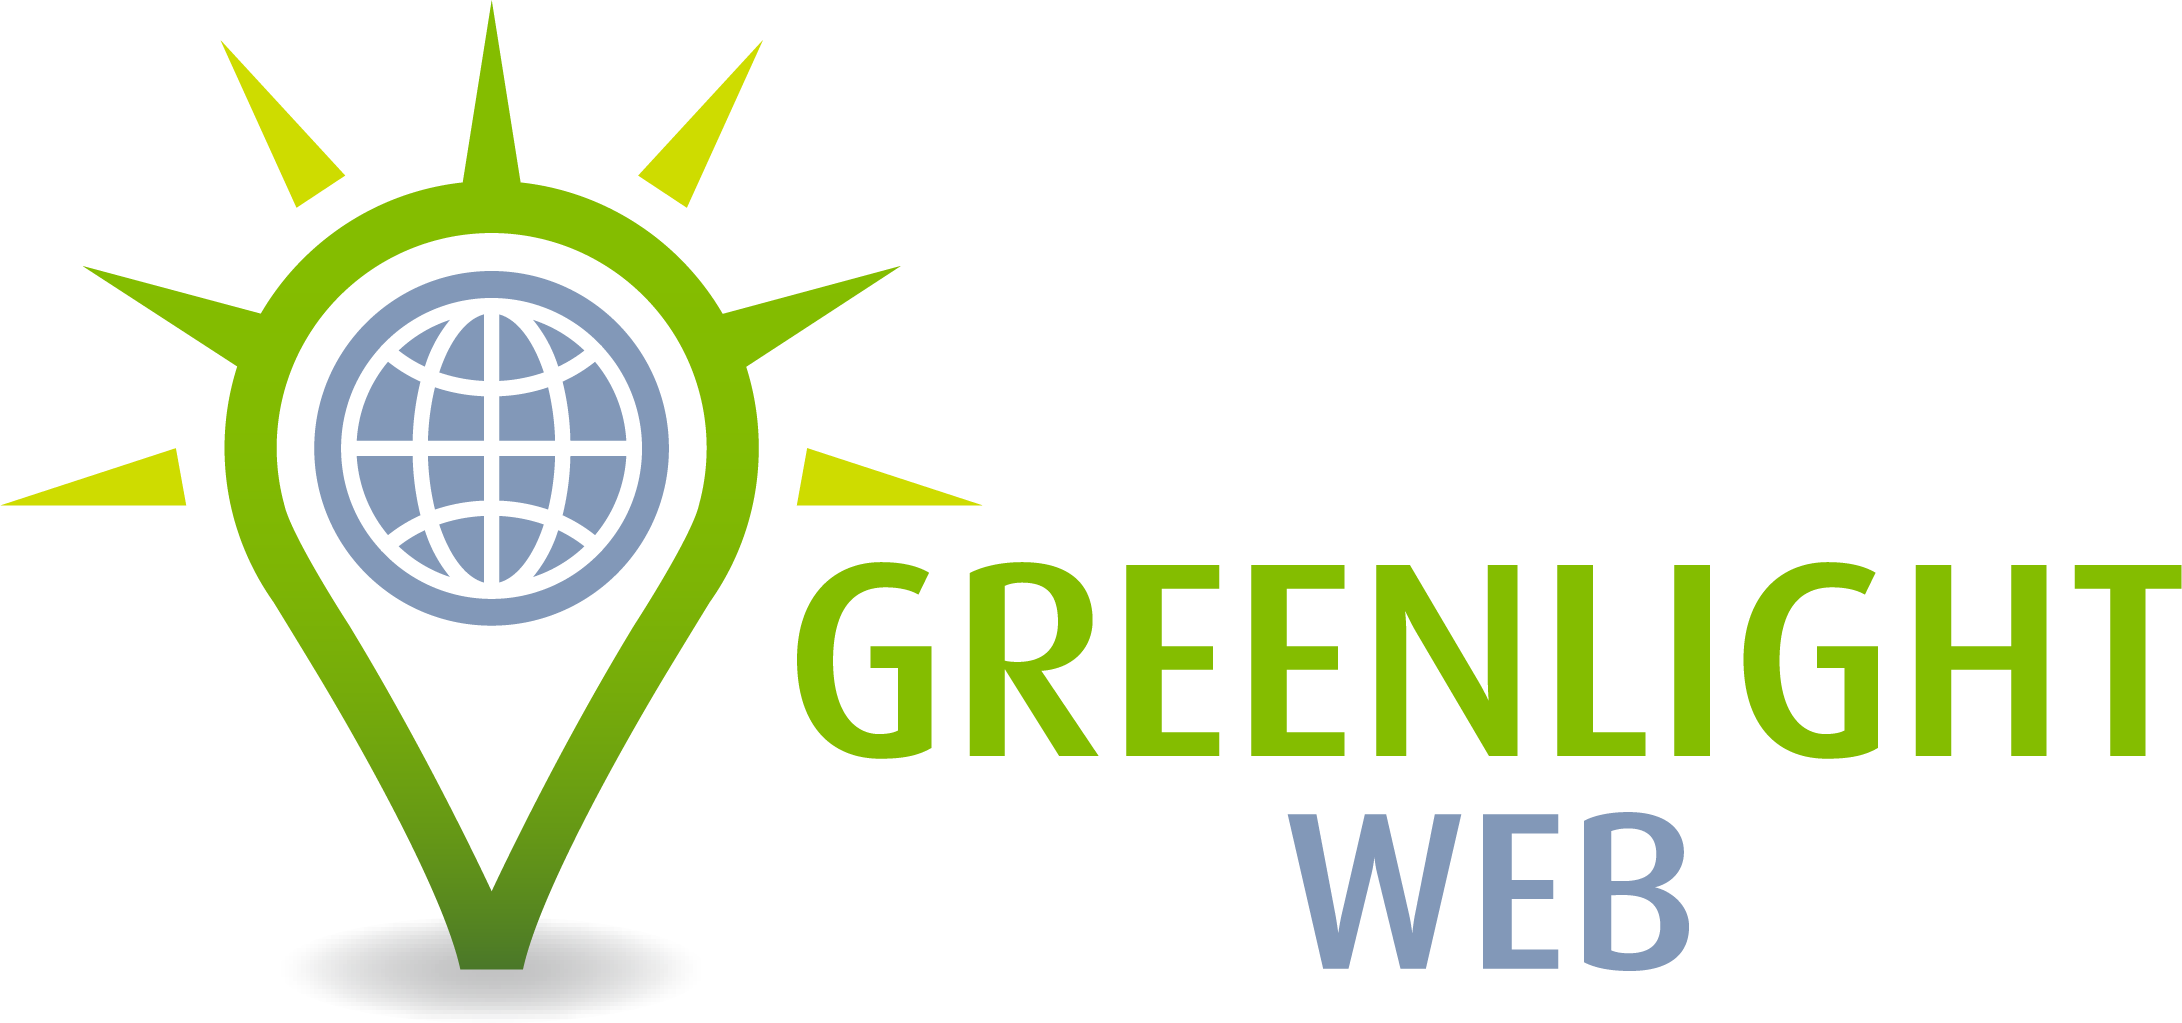 Greenlight Web